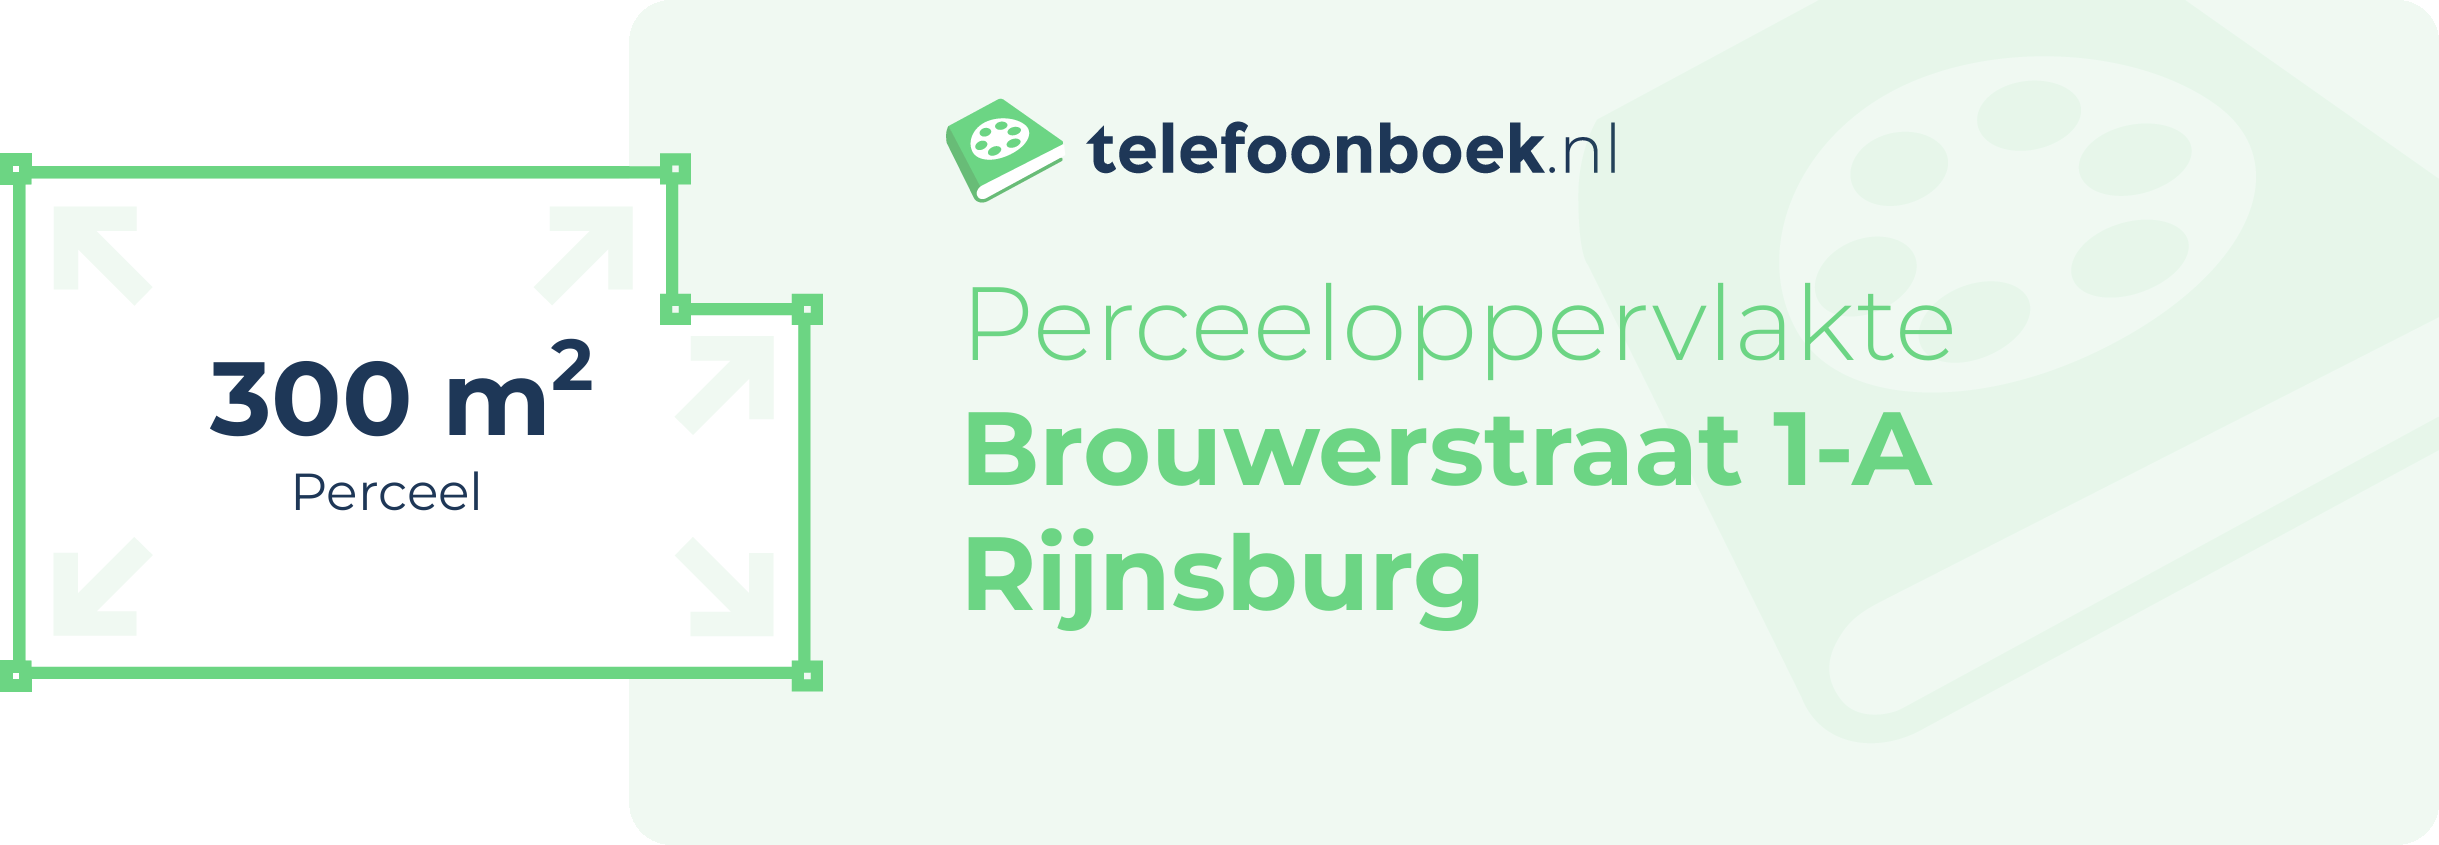 Perceeloppervlakte Brouwerstraat 1-A Rijnsburg